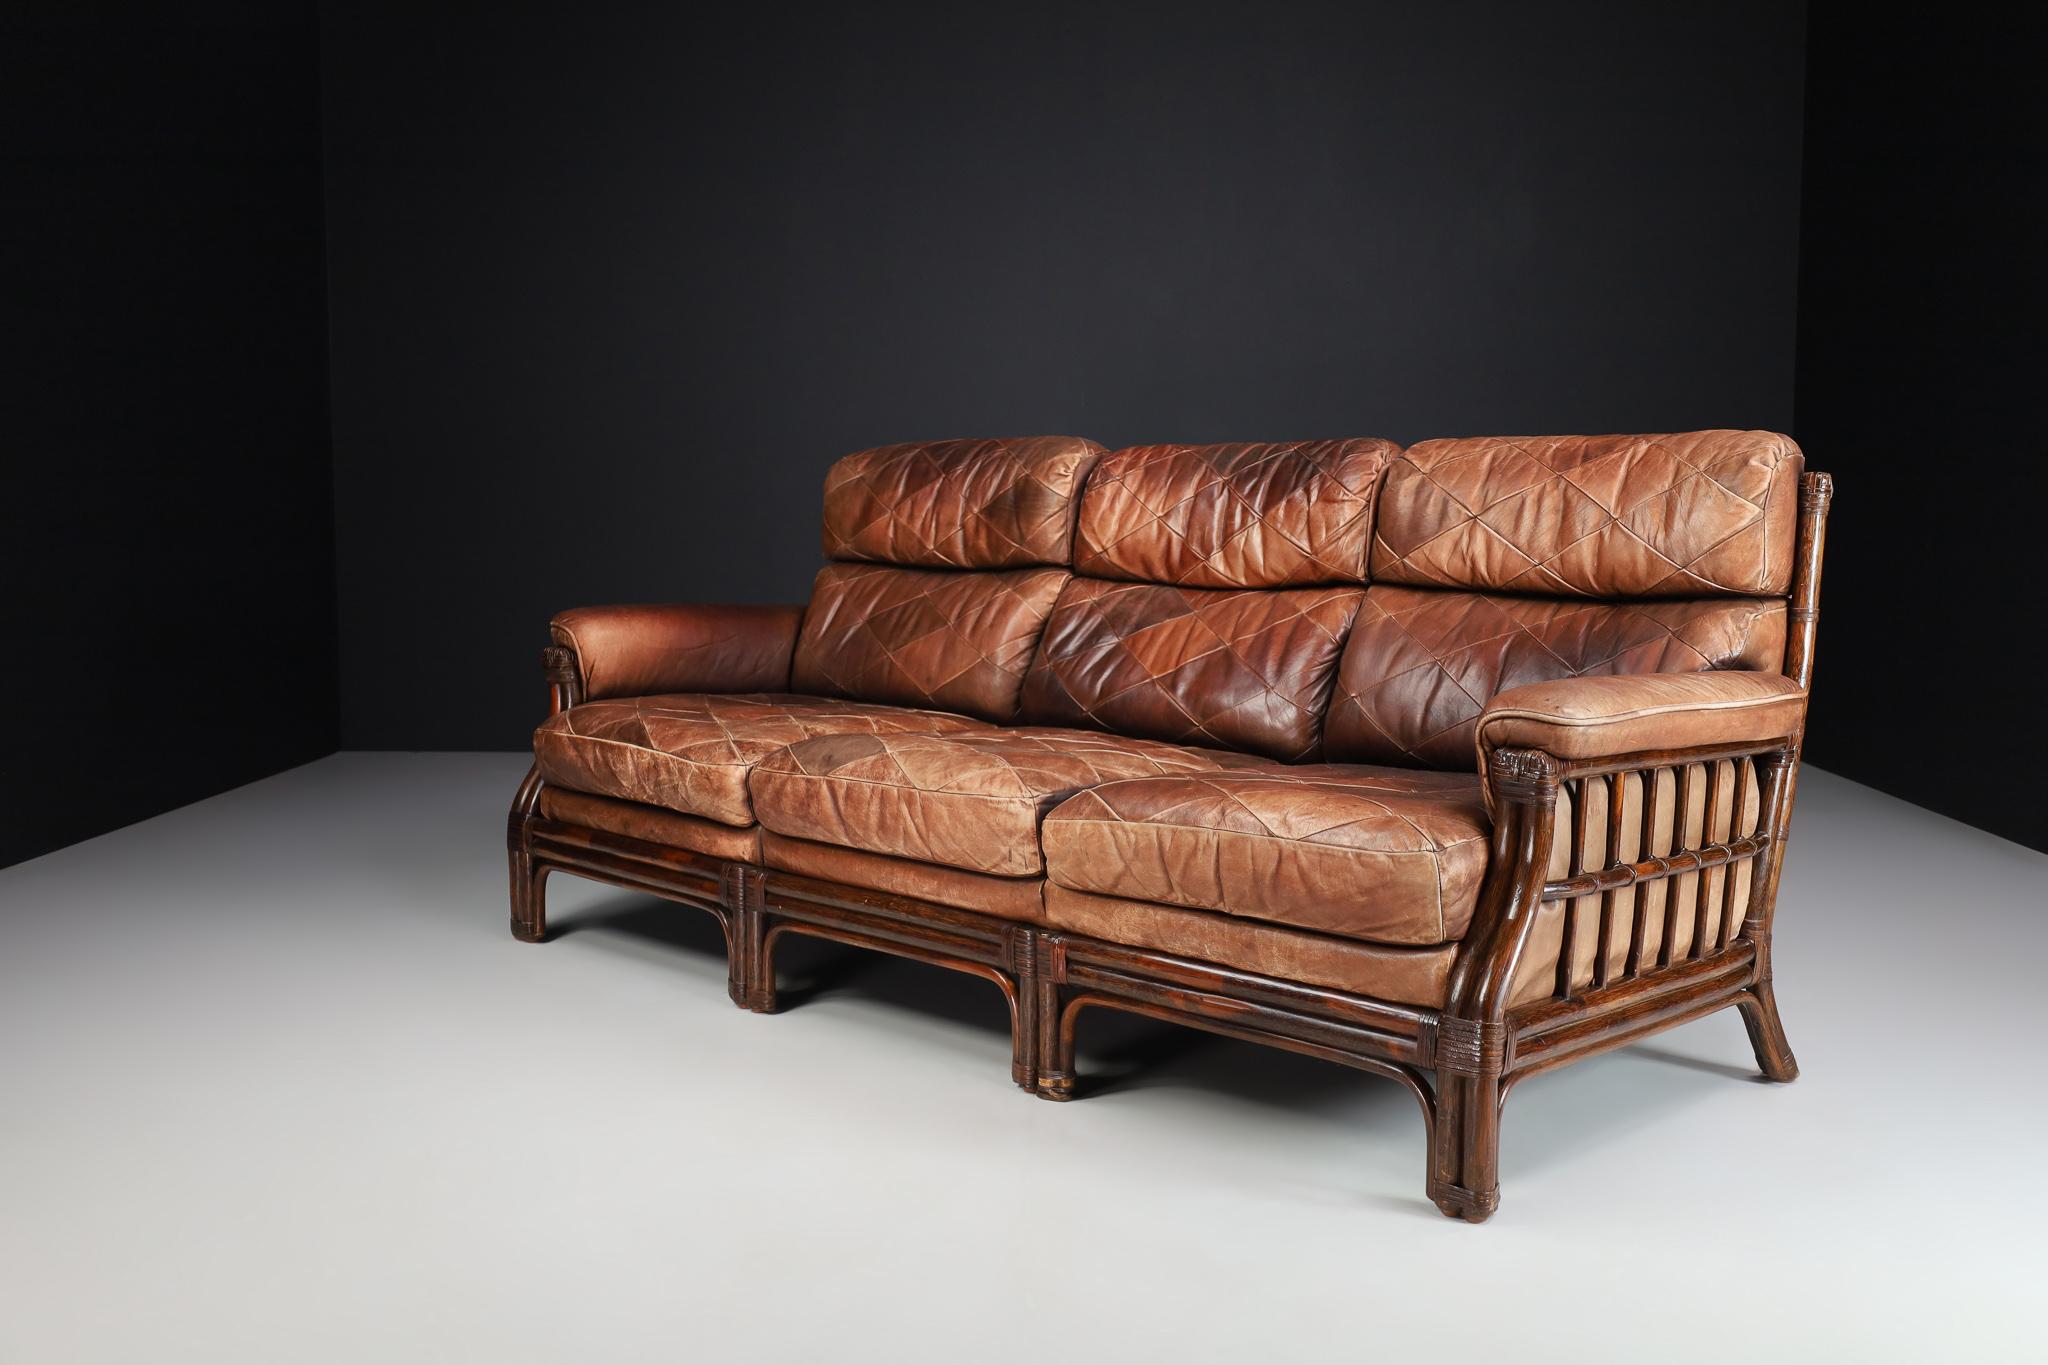 Mid-Century Modernes Sofa aus Bambus und Leder, Frankreich 1970er Jahre.

Dieses französische Sofa wurde 1970 in Frankreich aus Bambus und Leder hergestellt. Er ist ein echter Blickfang in jedem Interieur, z. B. in einem großen Wohnzimmer, einem